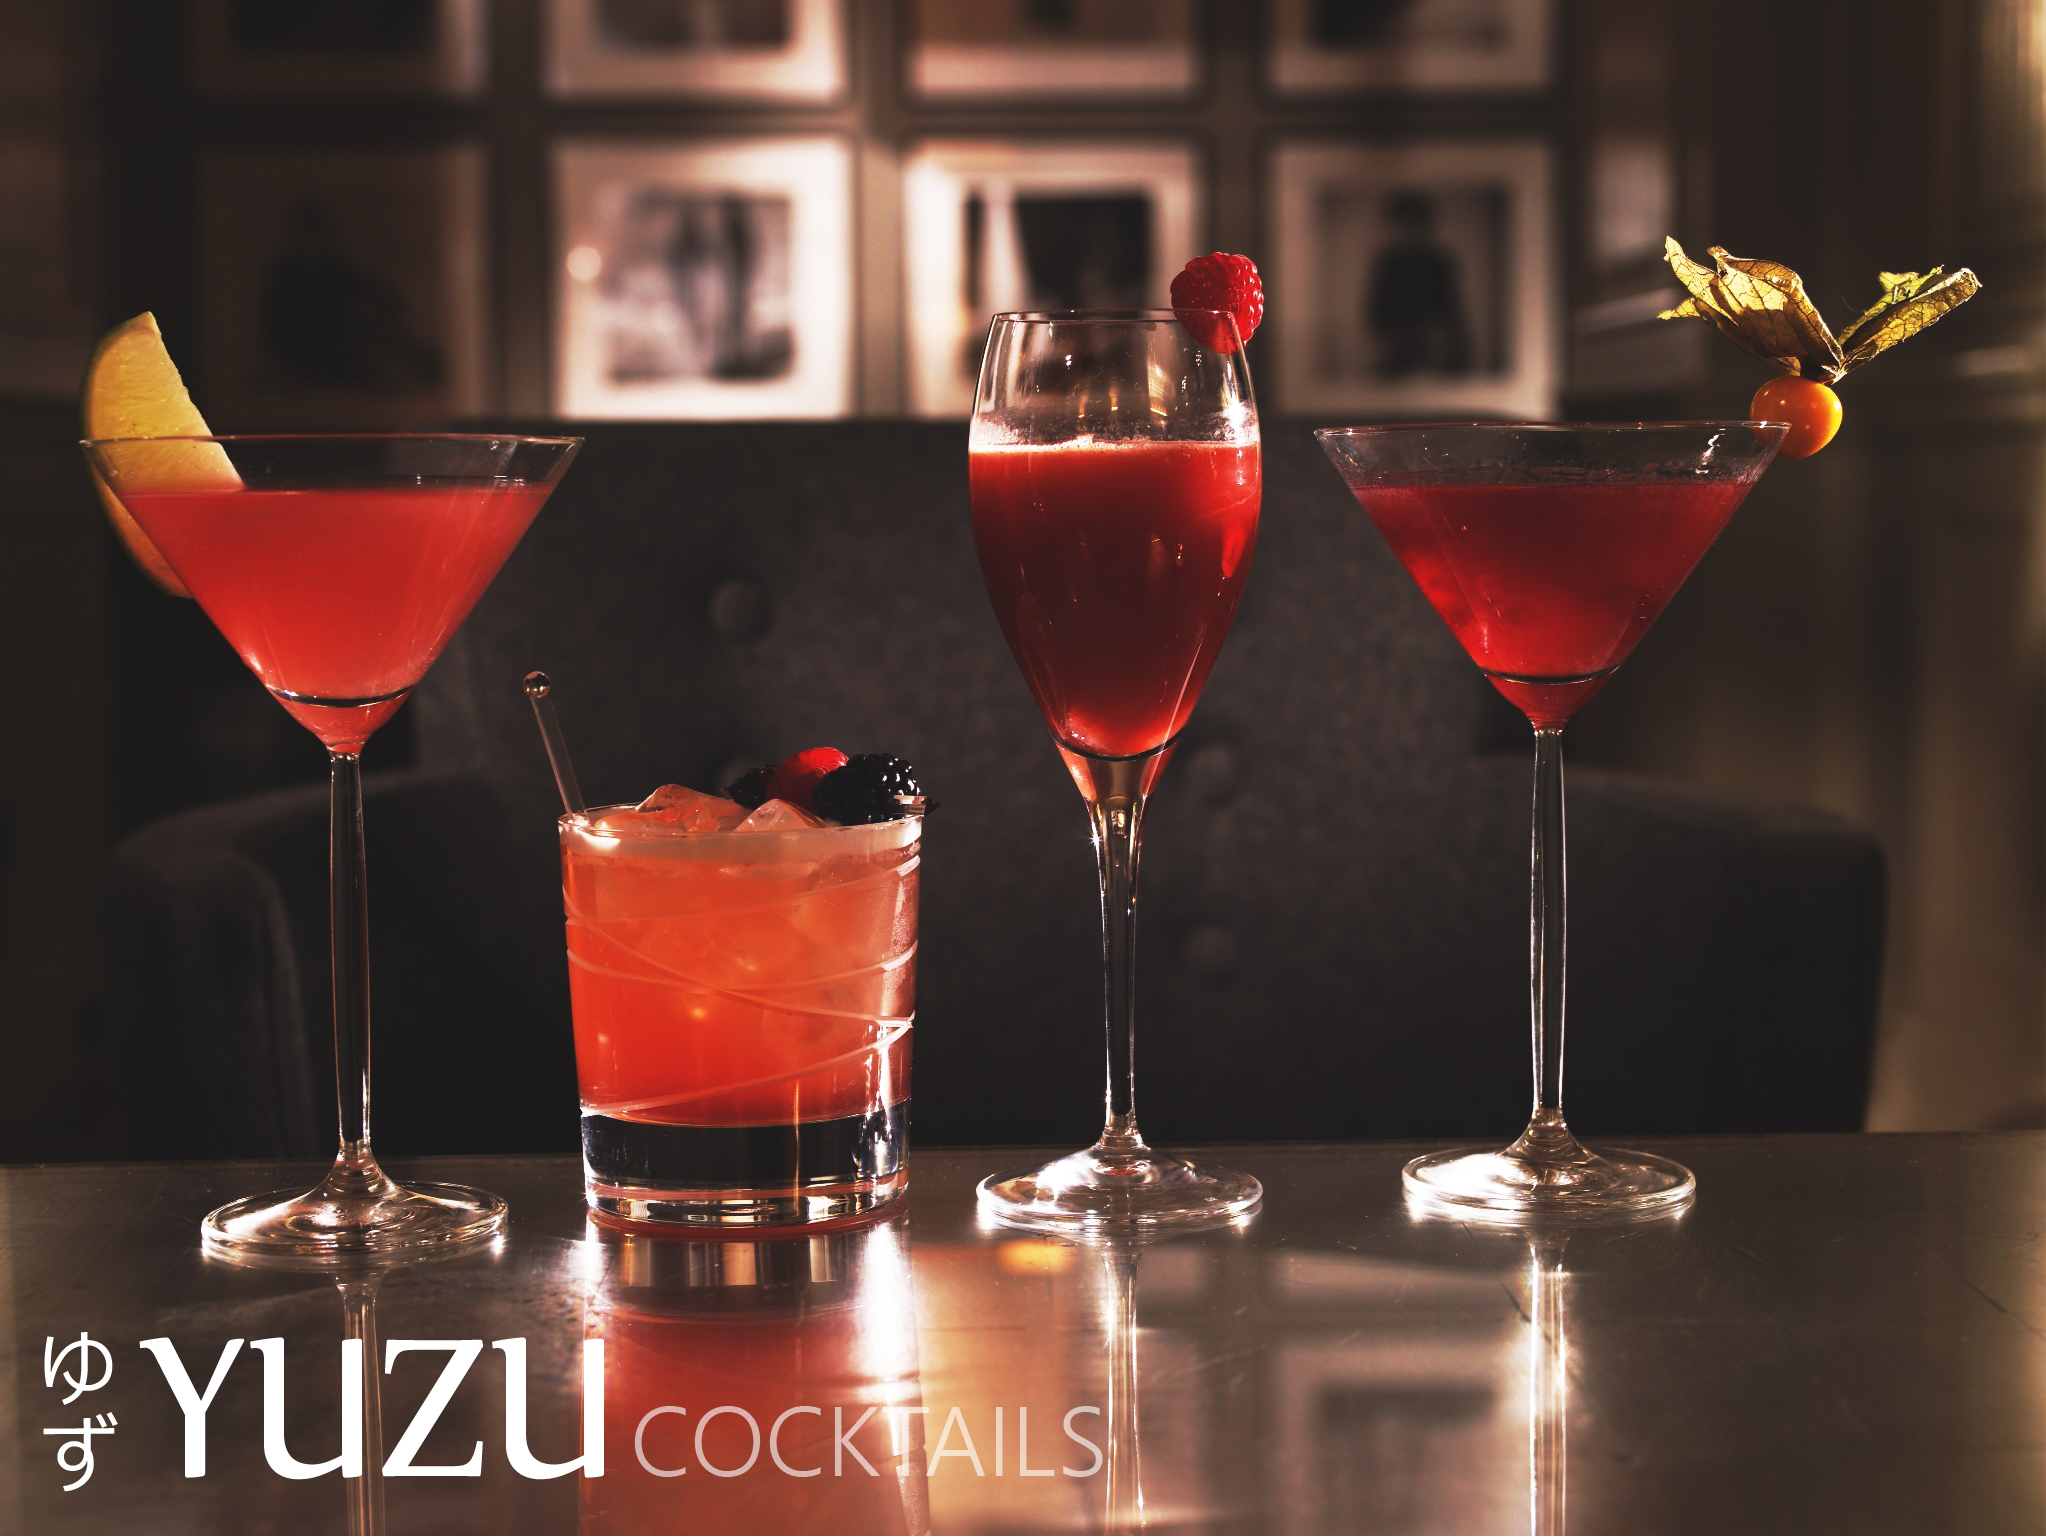 Yuzu cocktails